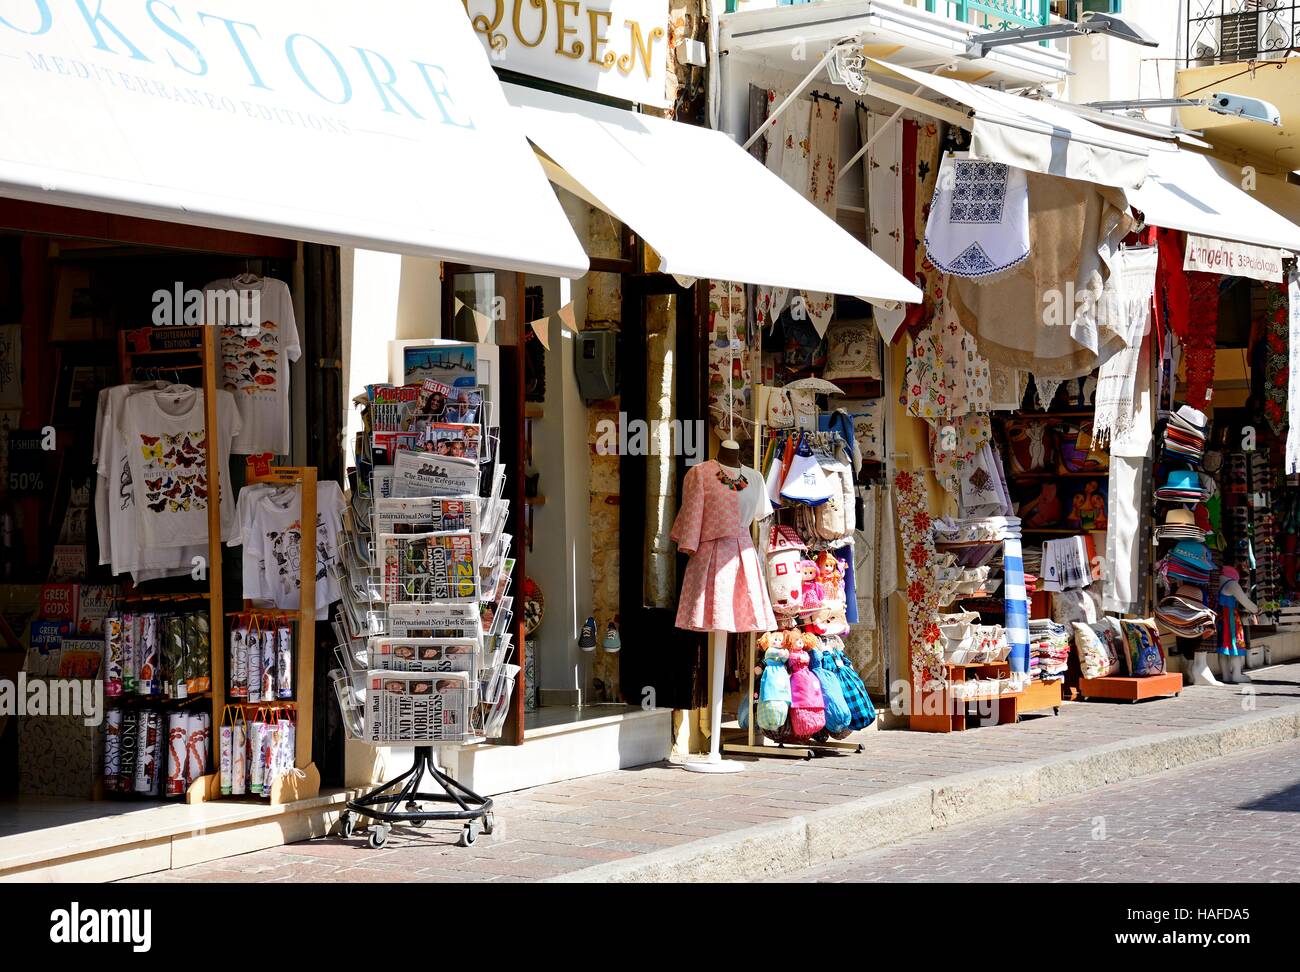 Tourist shopping street nella città vecchia, Rethimno, Creta, Grecia, l'Europa. Foto Stock